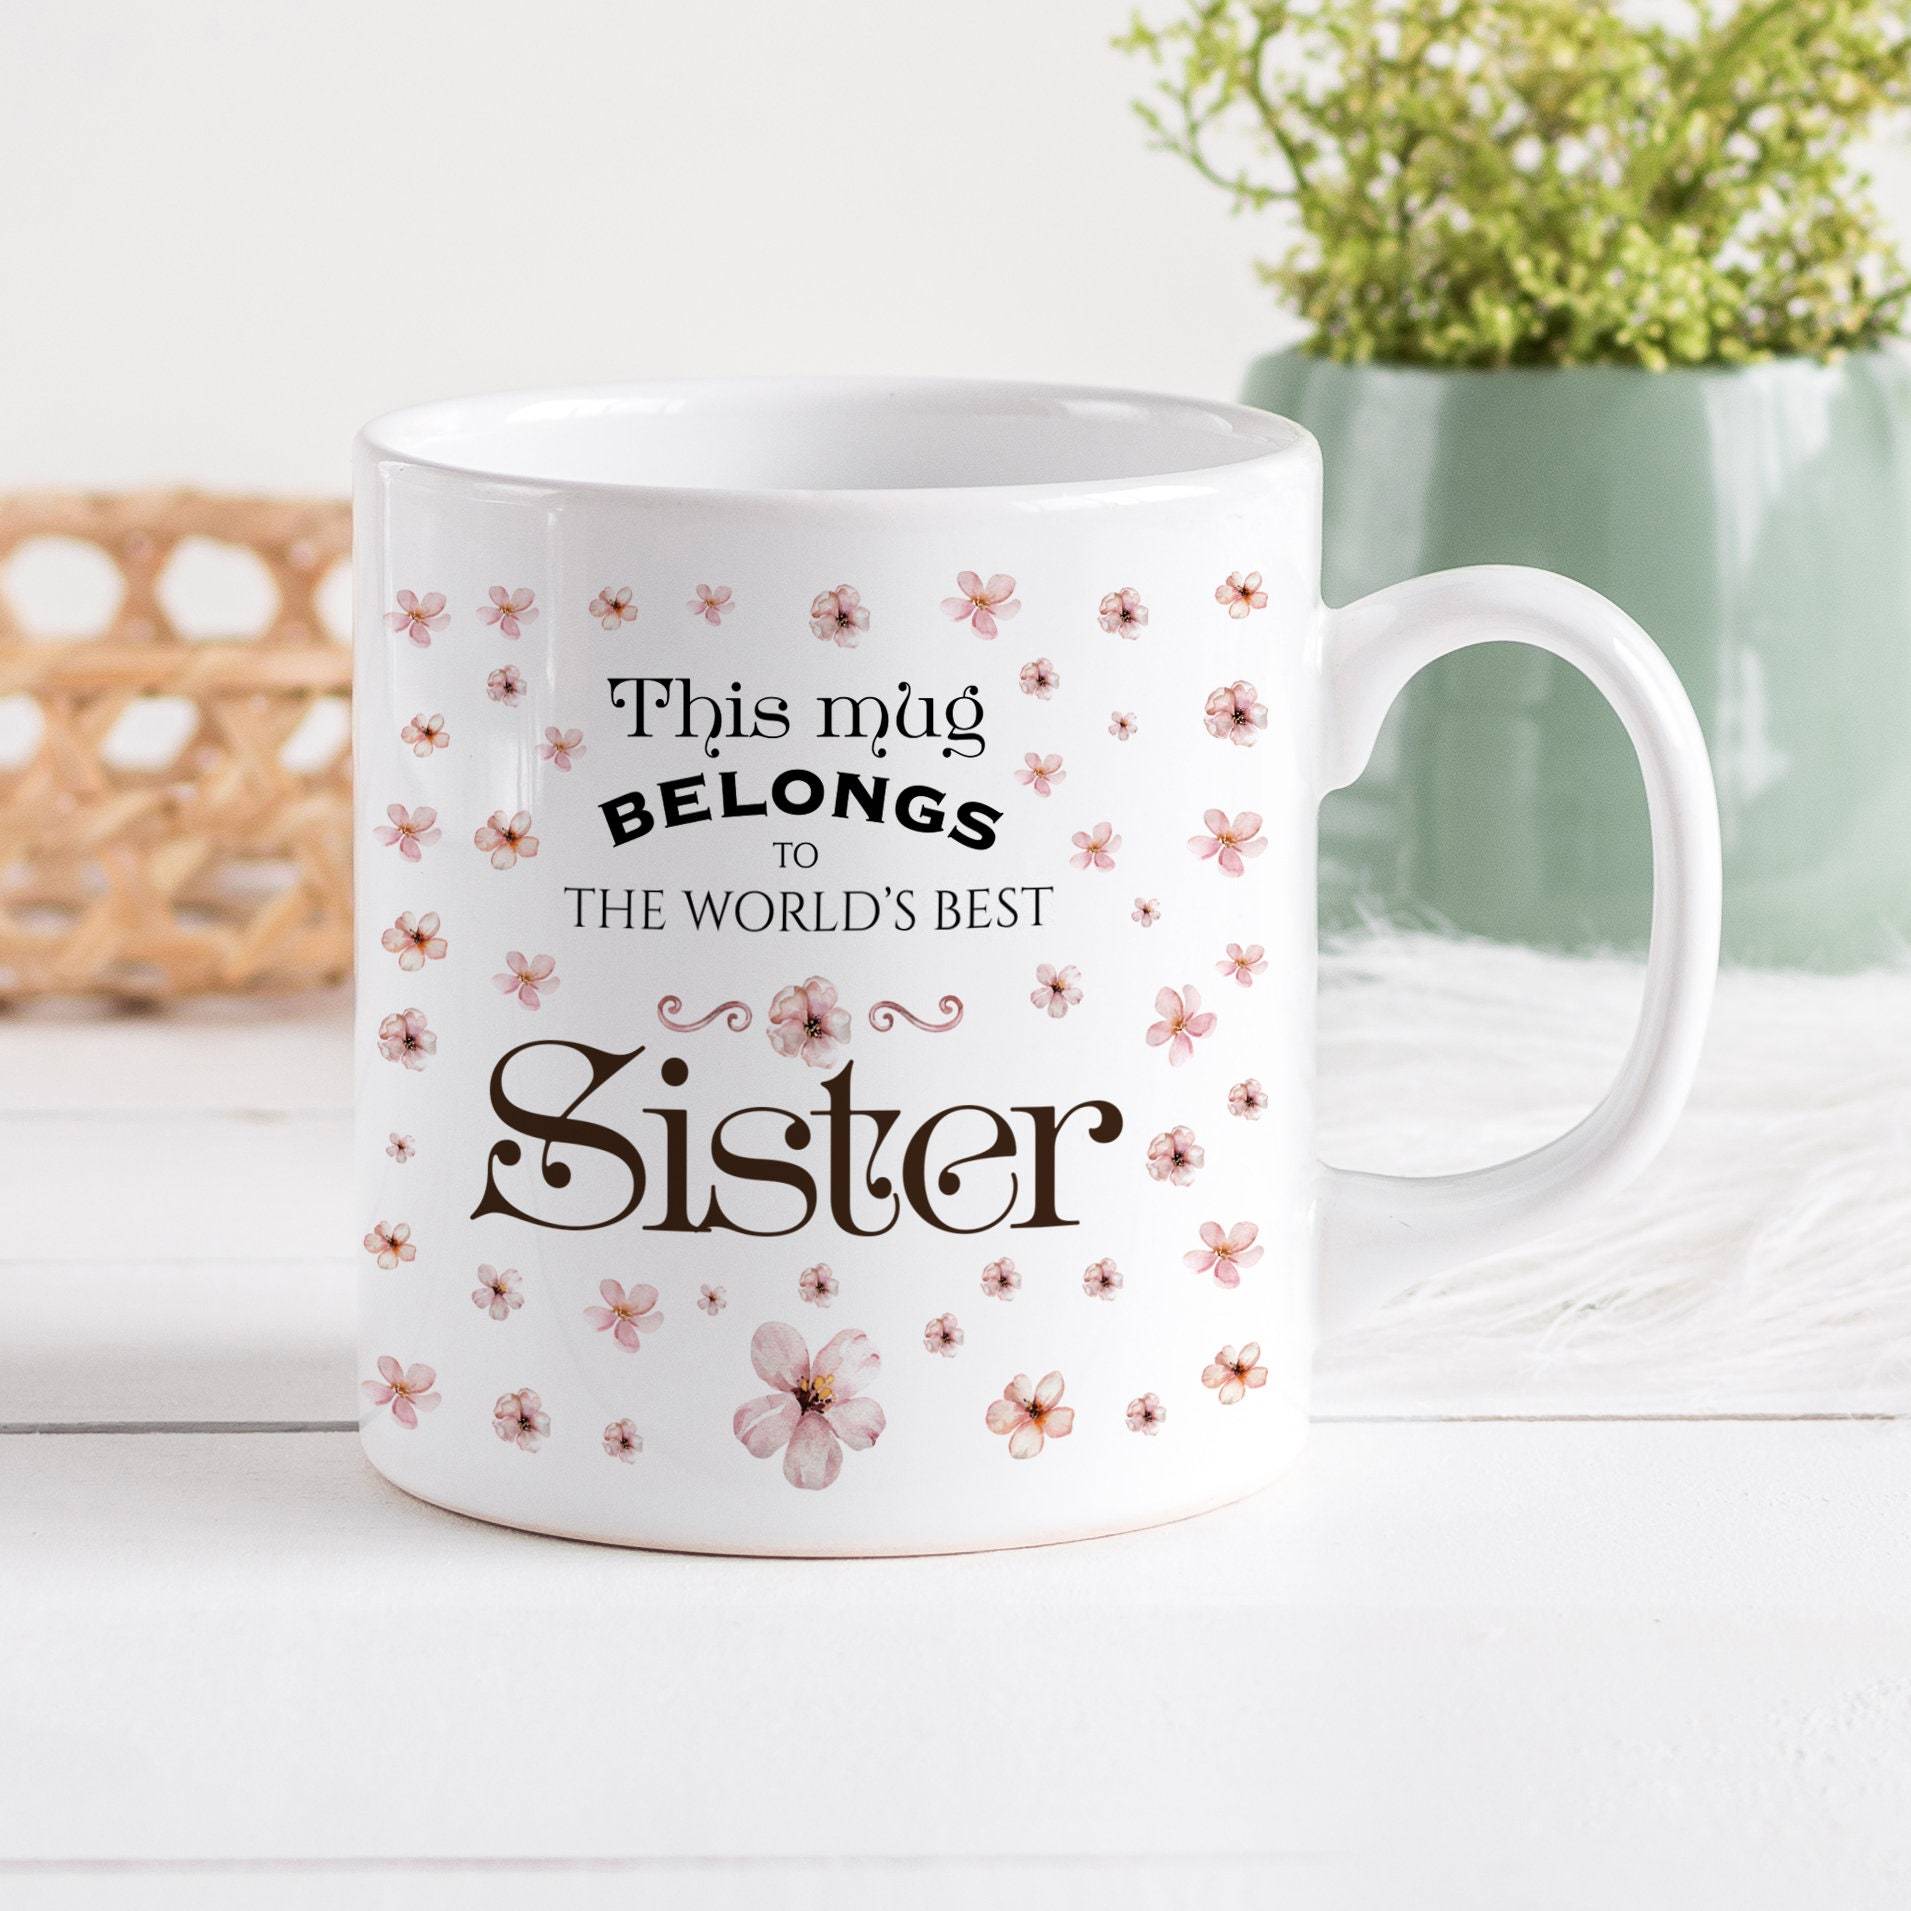 This Mug Belongs To The World's Best Sister Mug, Christmas or Birthday